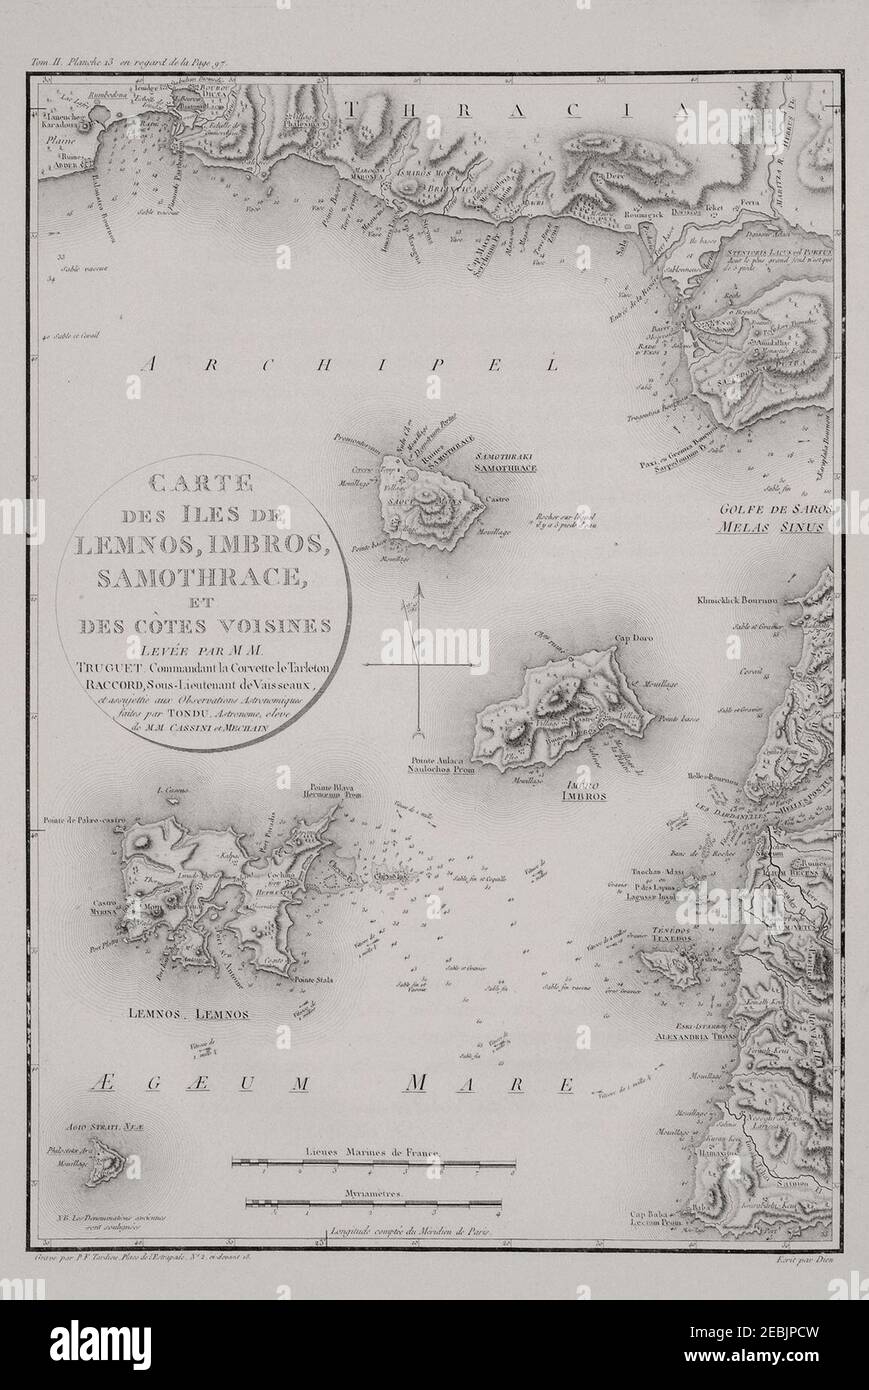 Northeast Aegean - Choiseul-Gouffier, Voyage pittoresque de la Grèce, Paris, 1809. Stock Photo